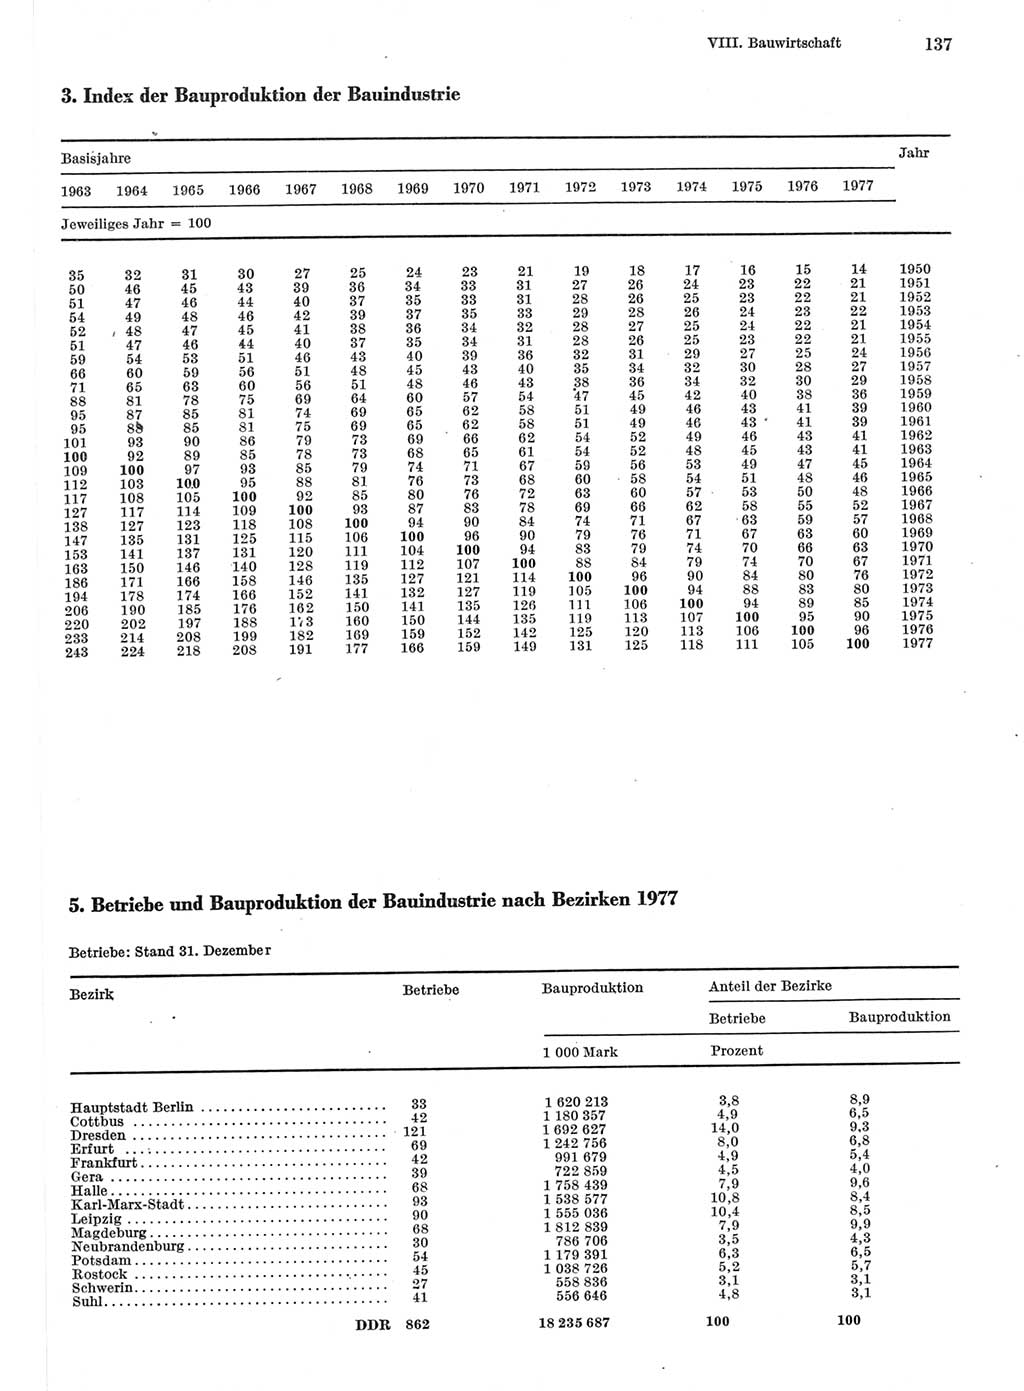 Statistisches Jahrbuch der Deutschen Demokratischen Republik (DDR) 1978, Seite 137 (Stat. Jb. DDR 1978, S. 137)